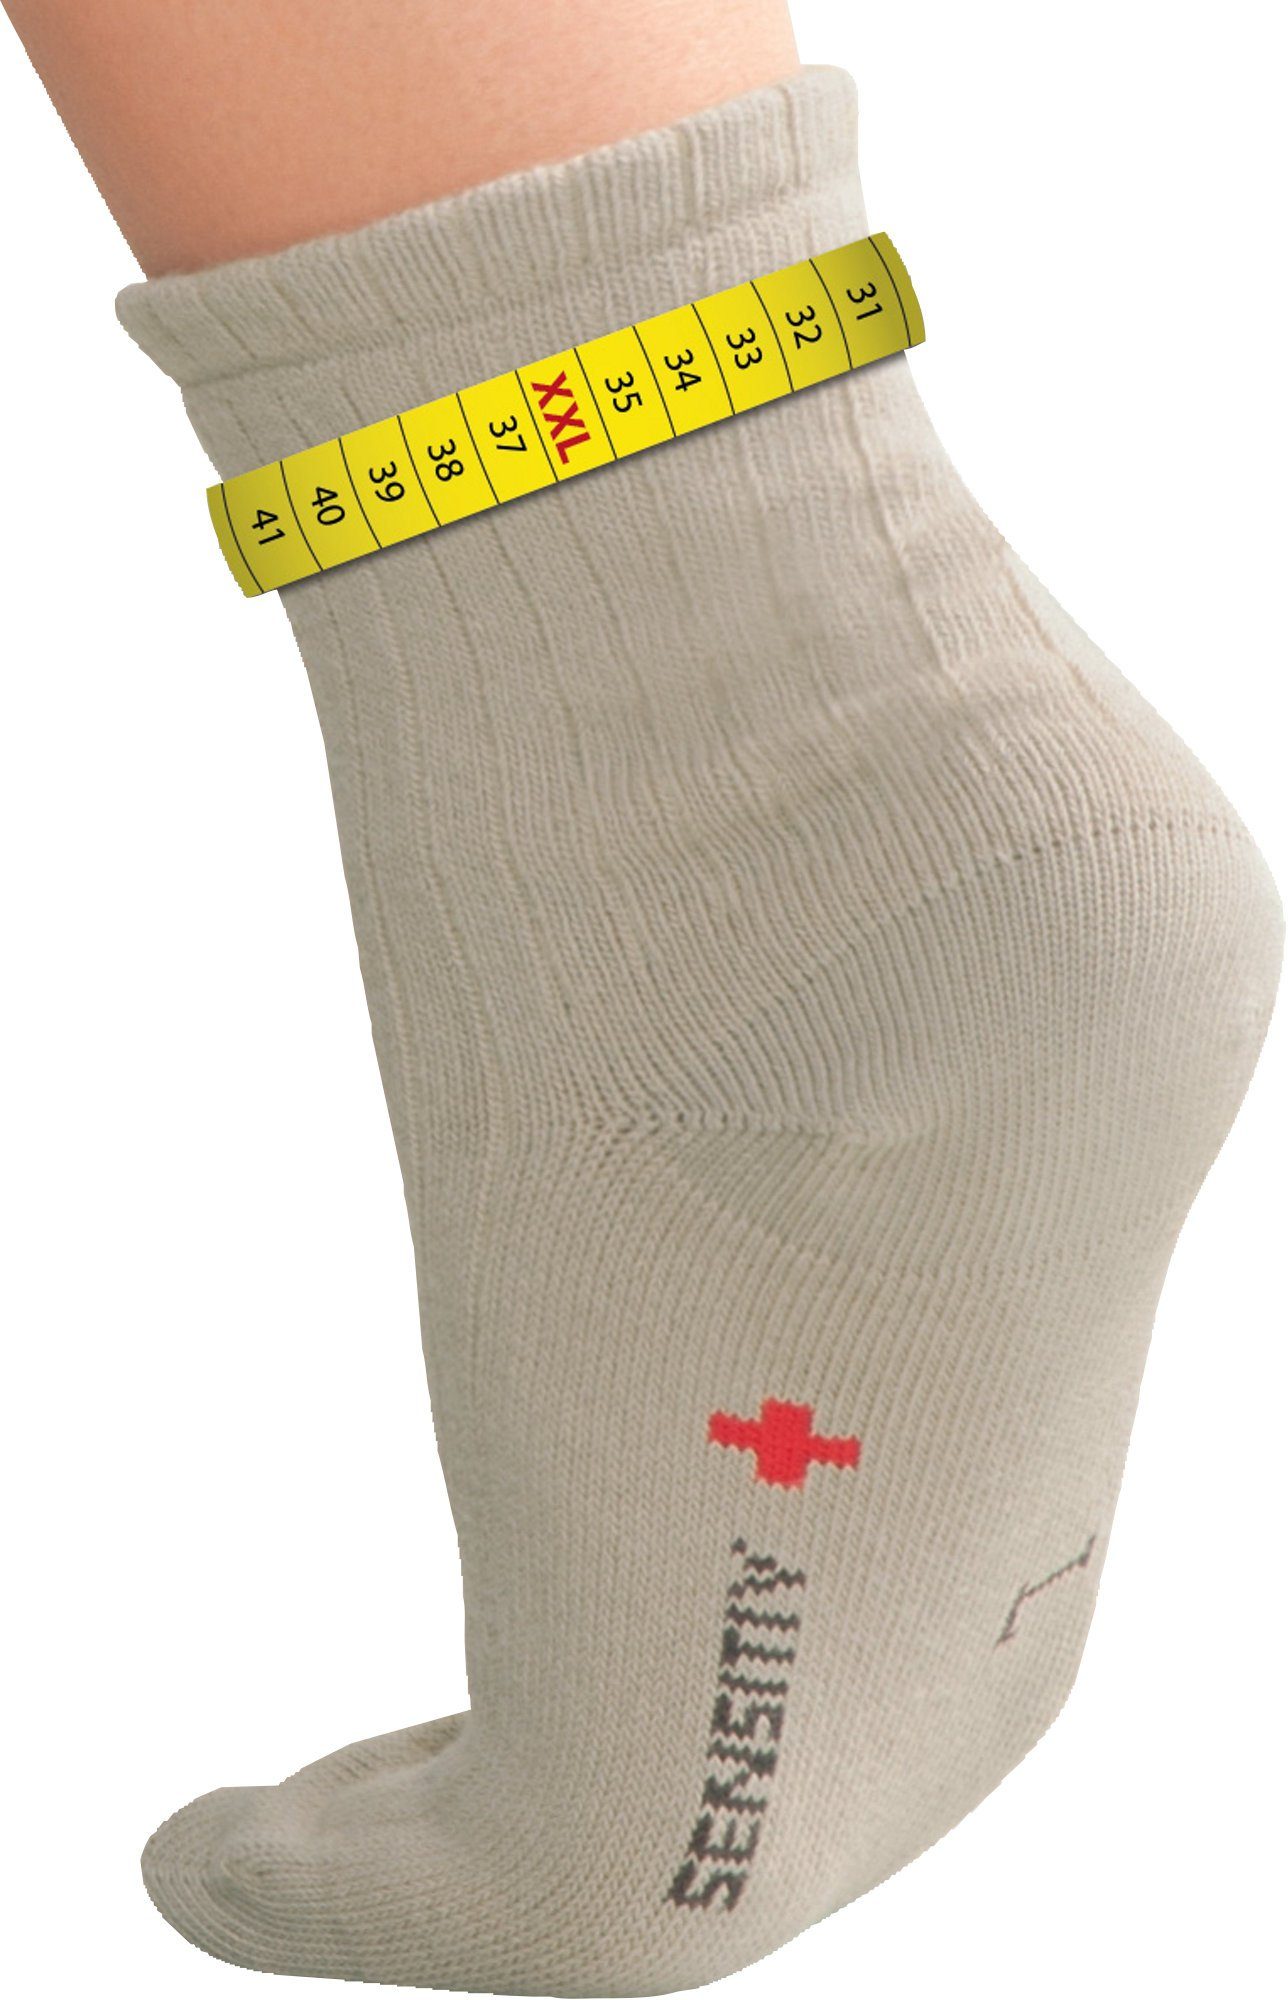 Diabetes Socken online kaufen | OTTO